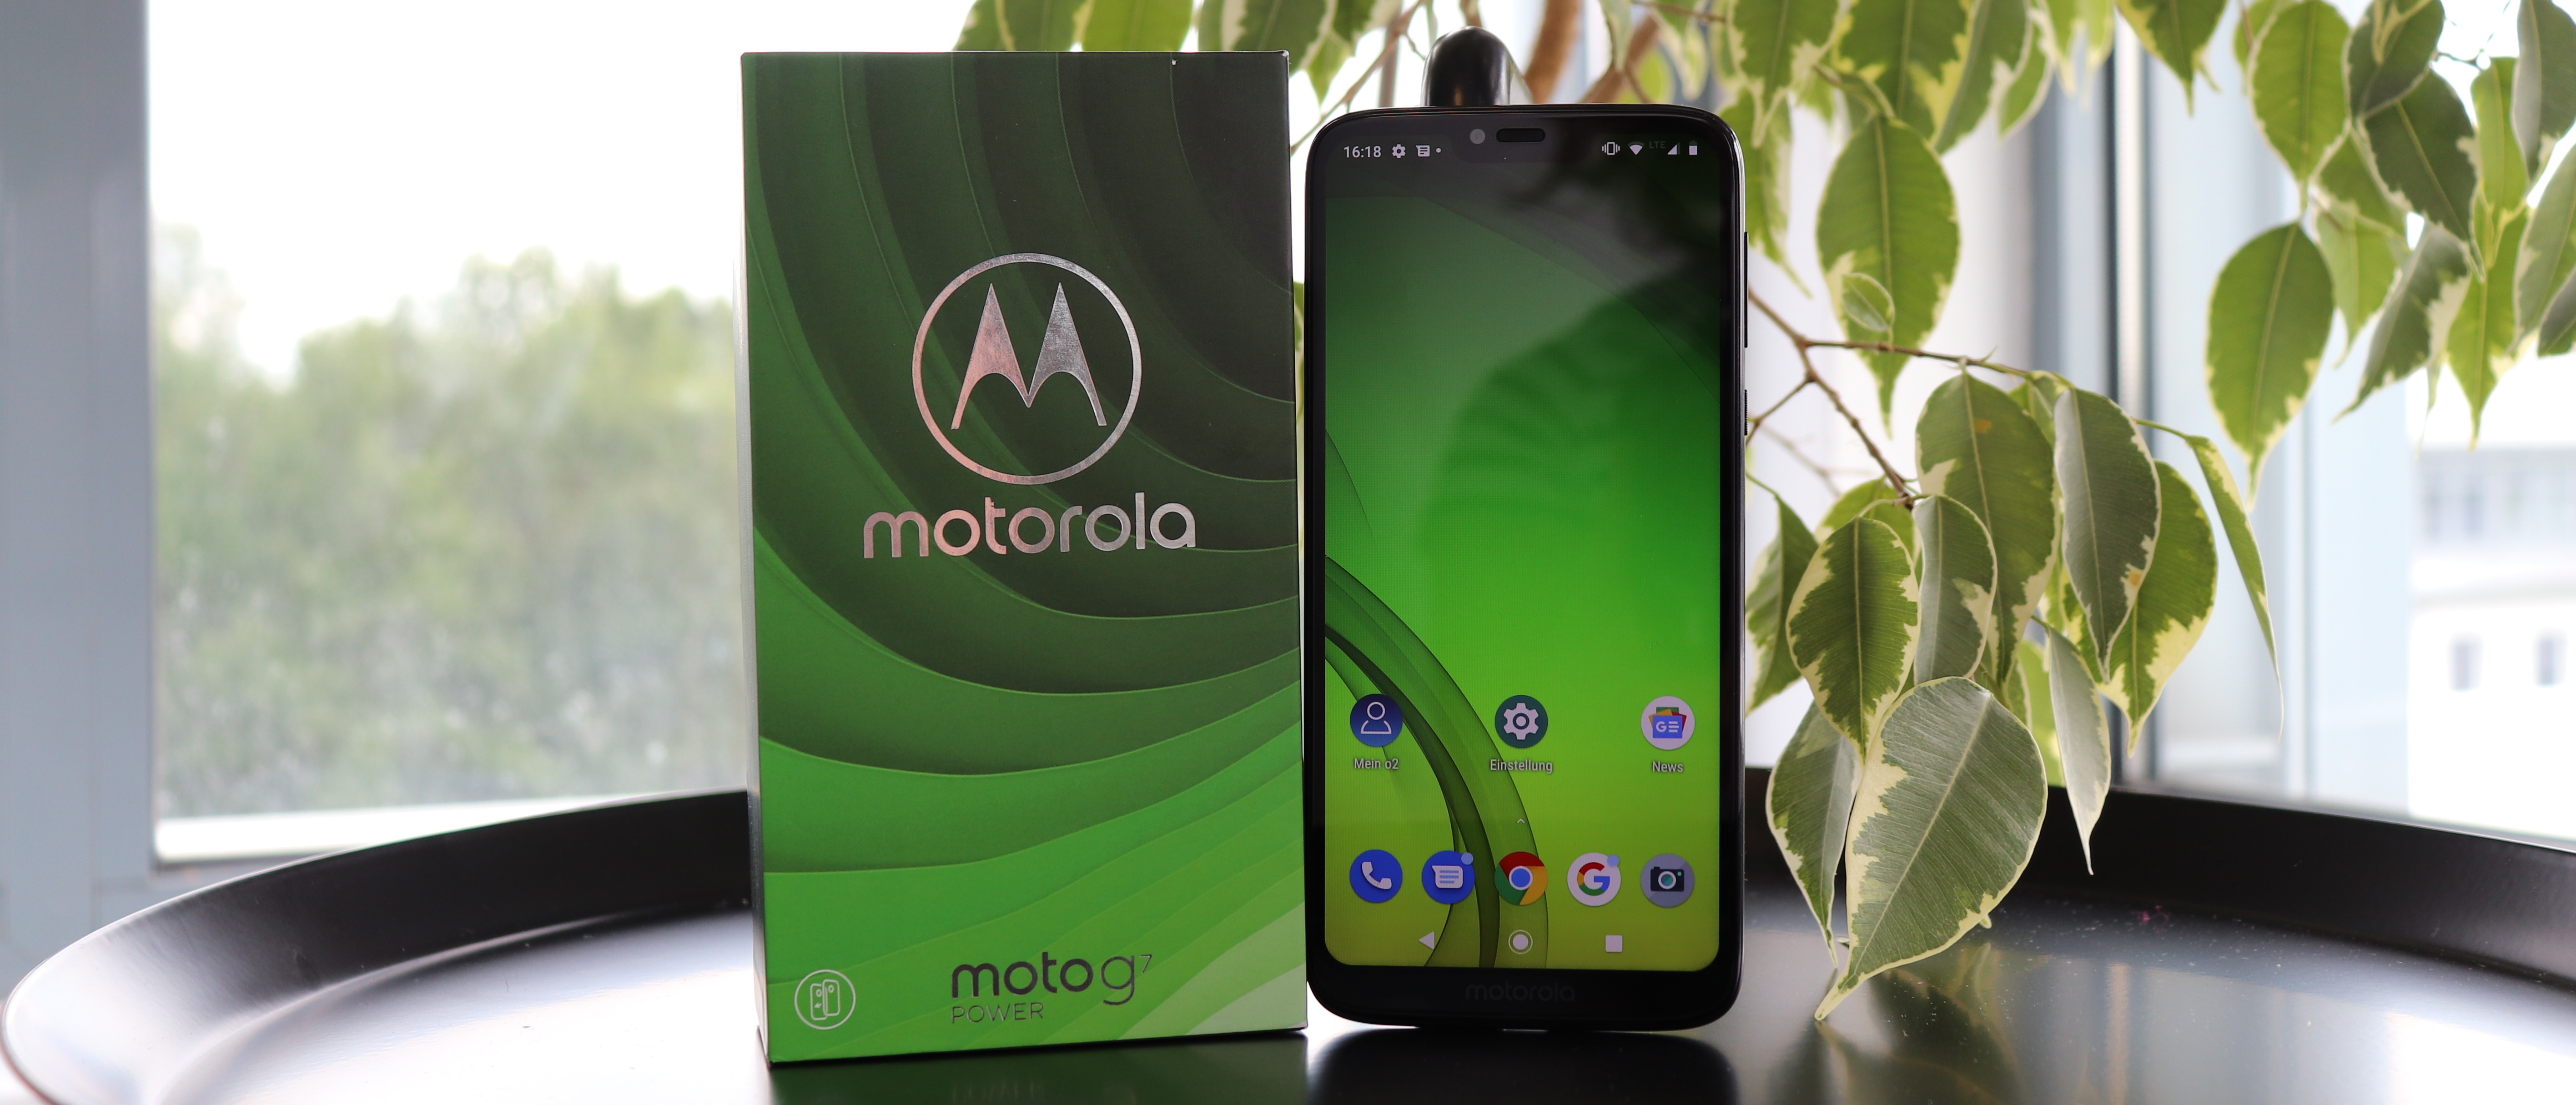 Motorola Moto G7 Power – Werde Smartphone-Tester und teste die Power! Jetzt bewerben!